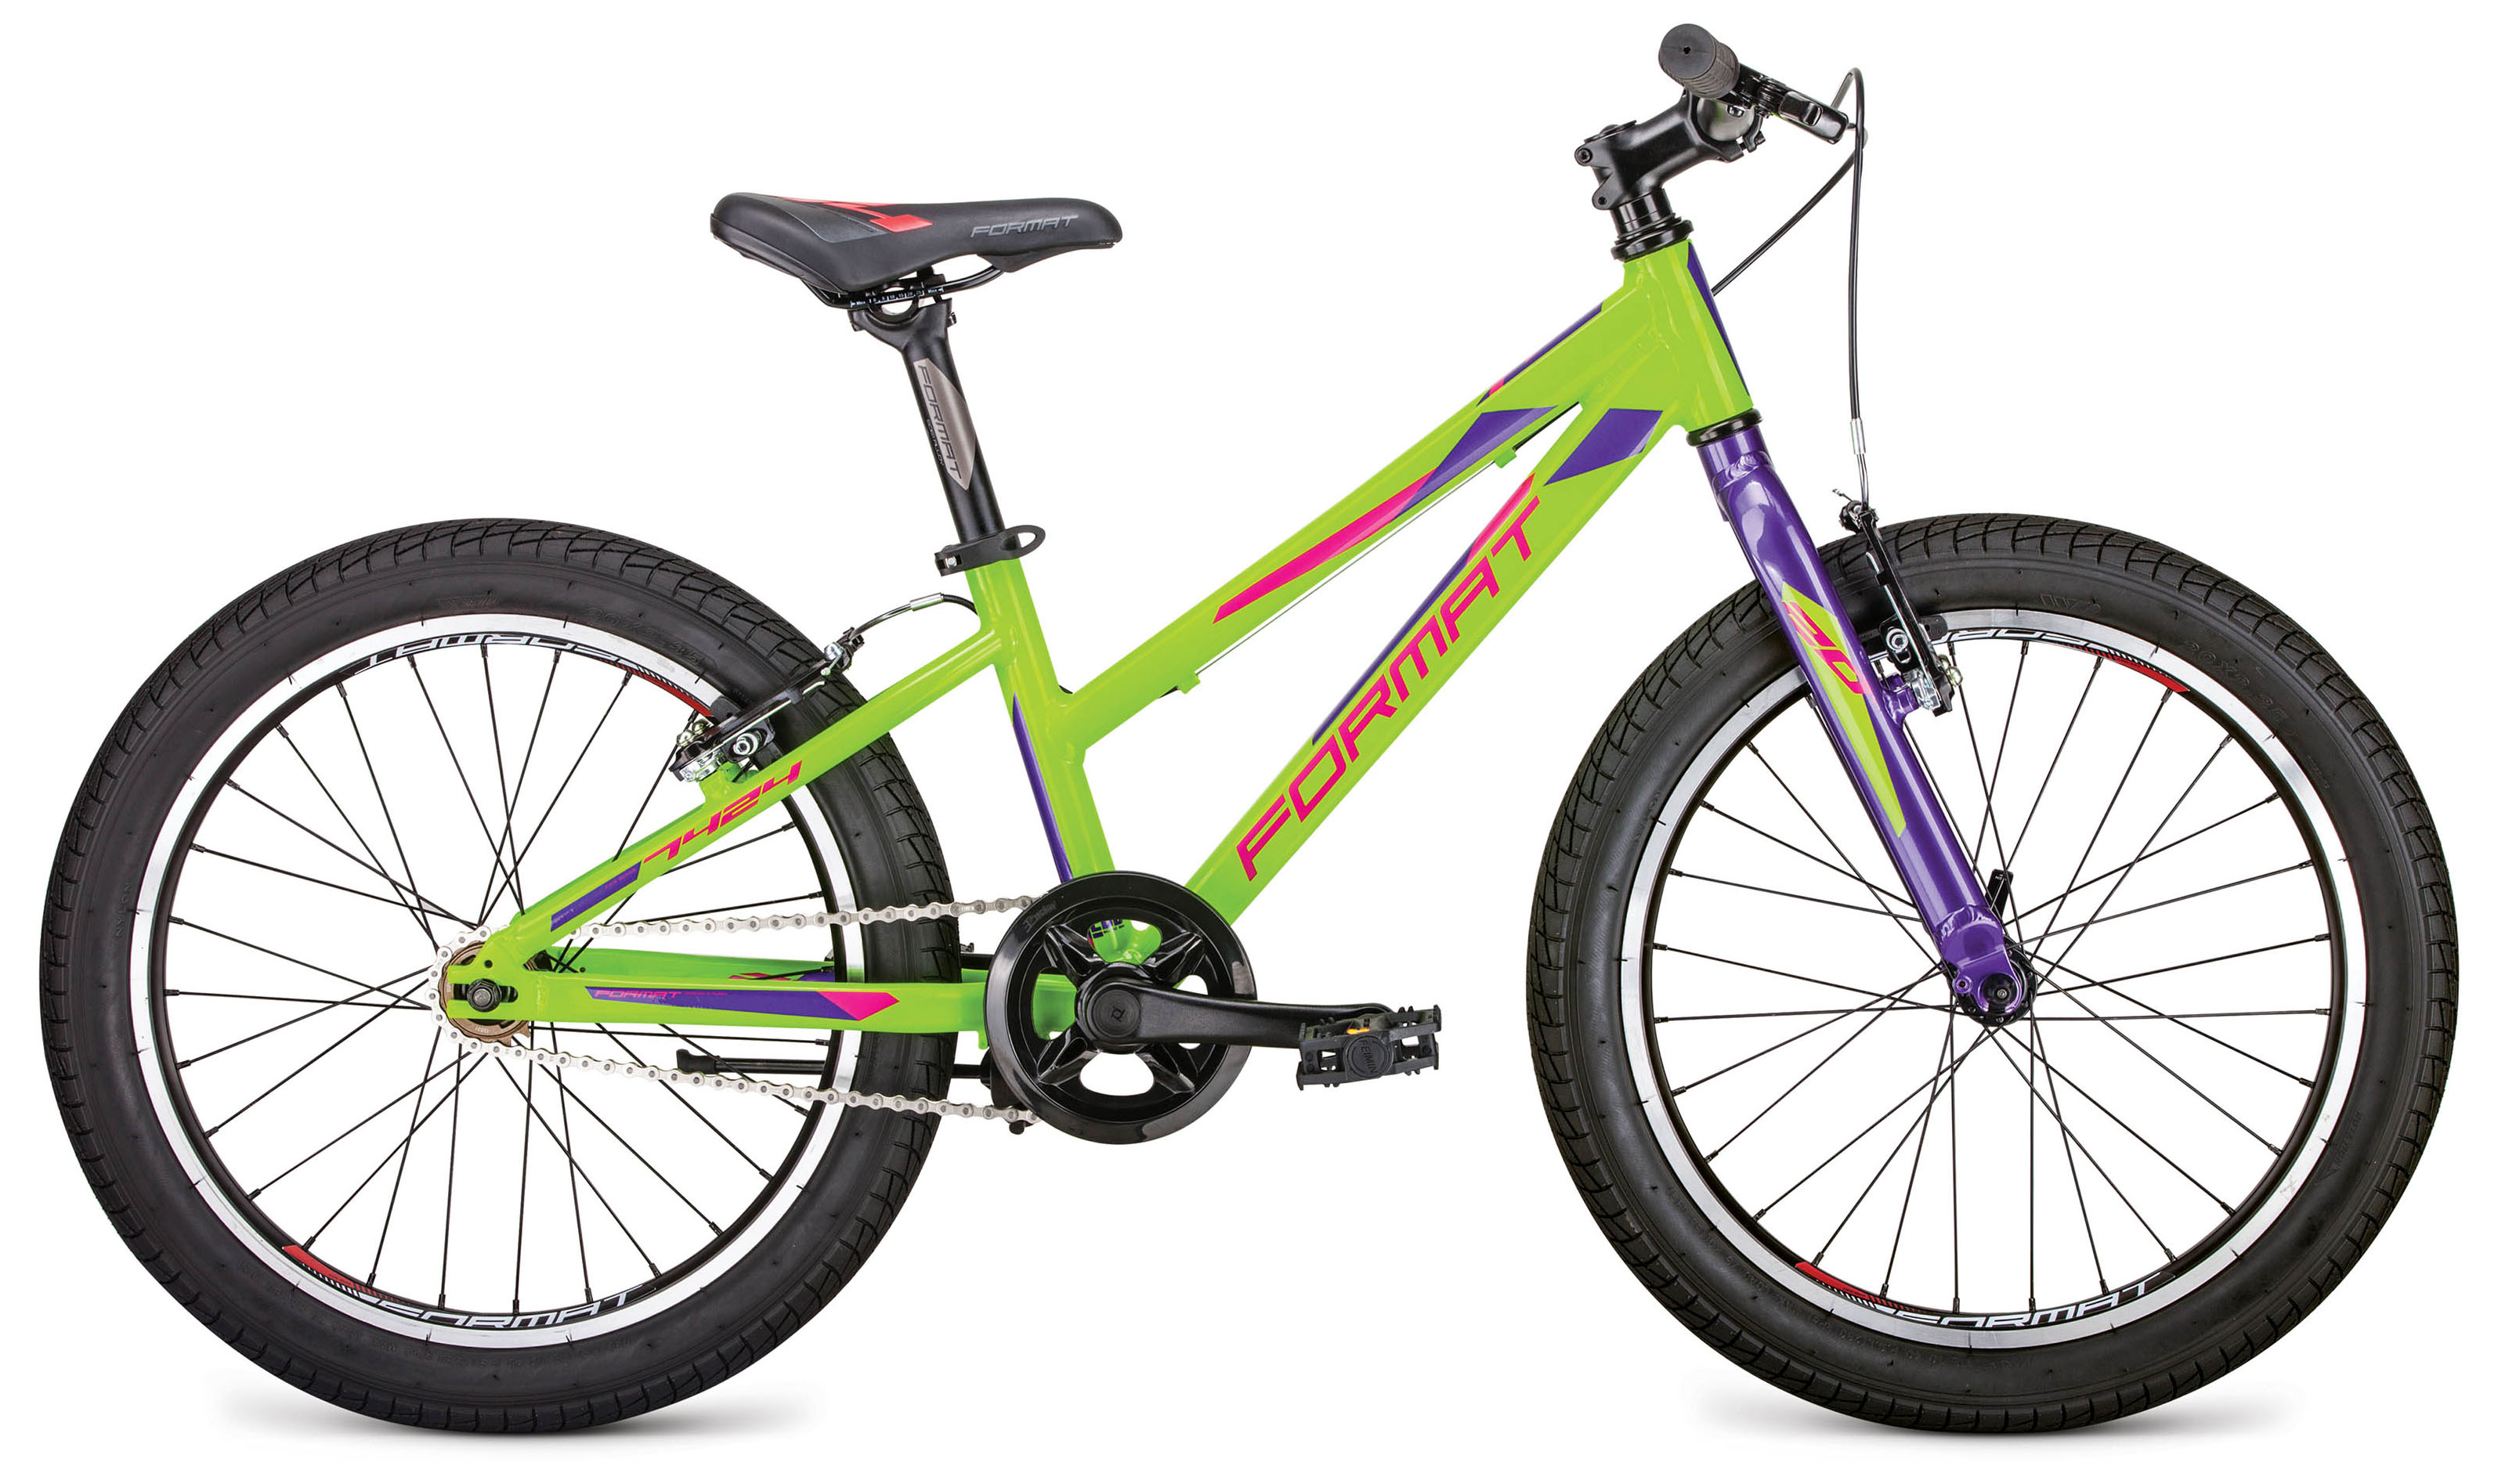  Отзывы о Детском велосипеде Format 7424 2019